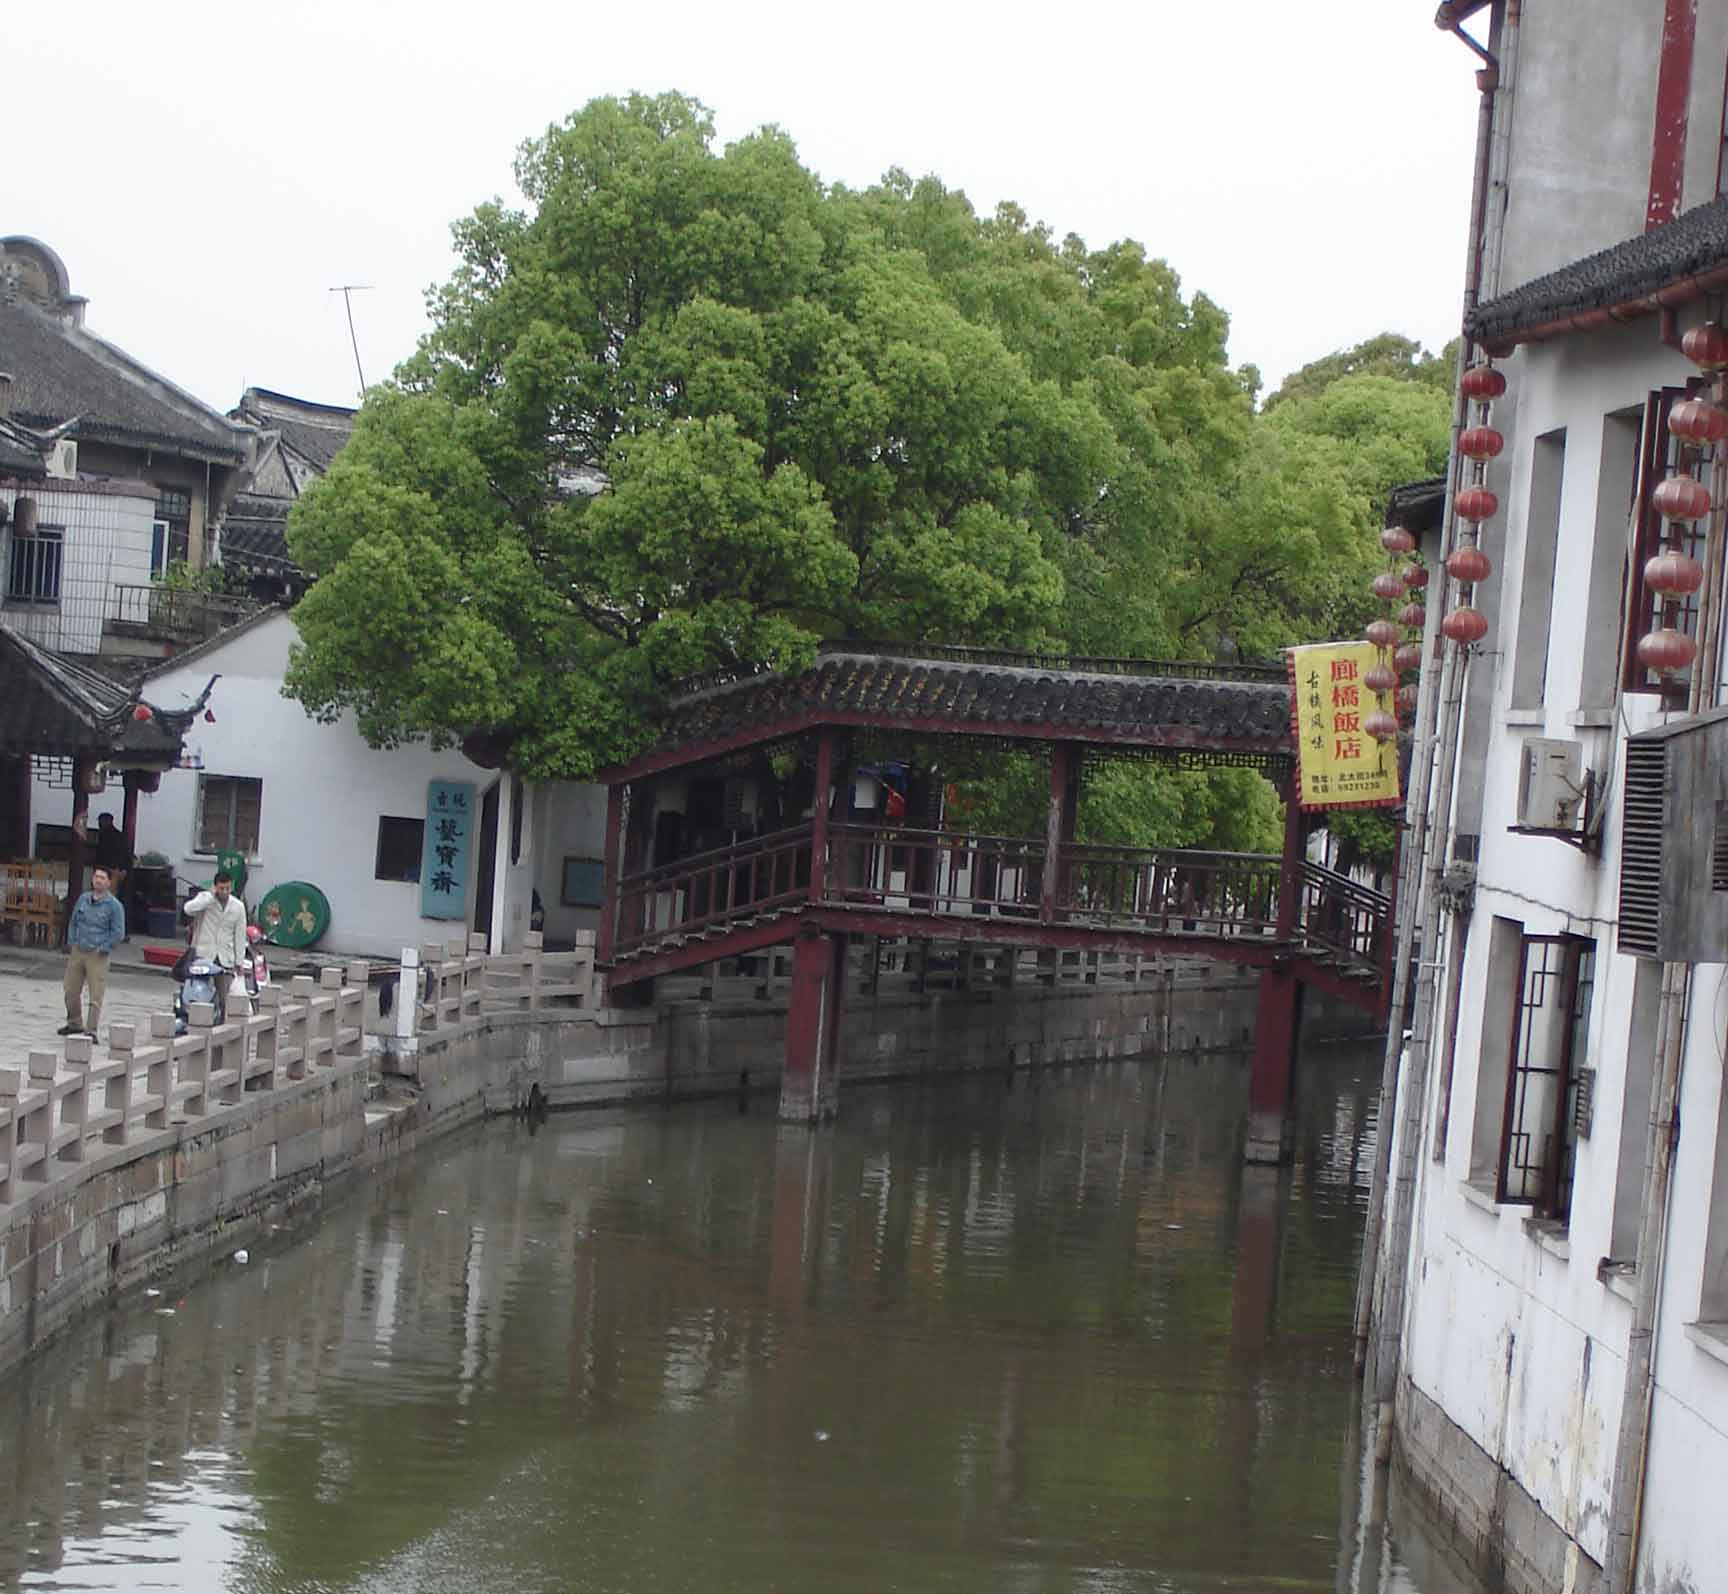 Traditional covered wooden bridge - Zhujiajiao- Ancient Water Town